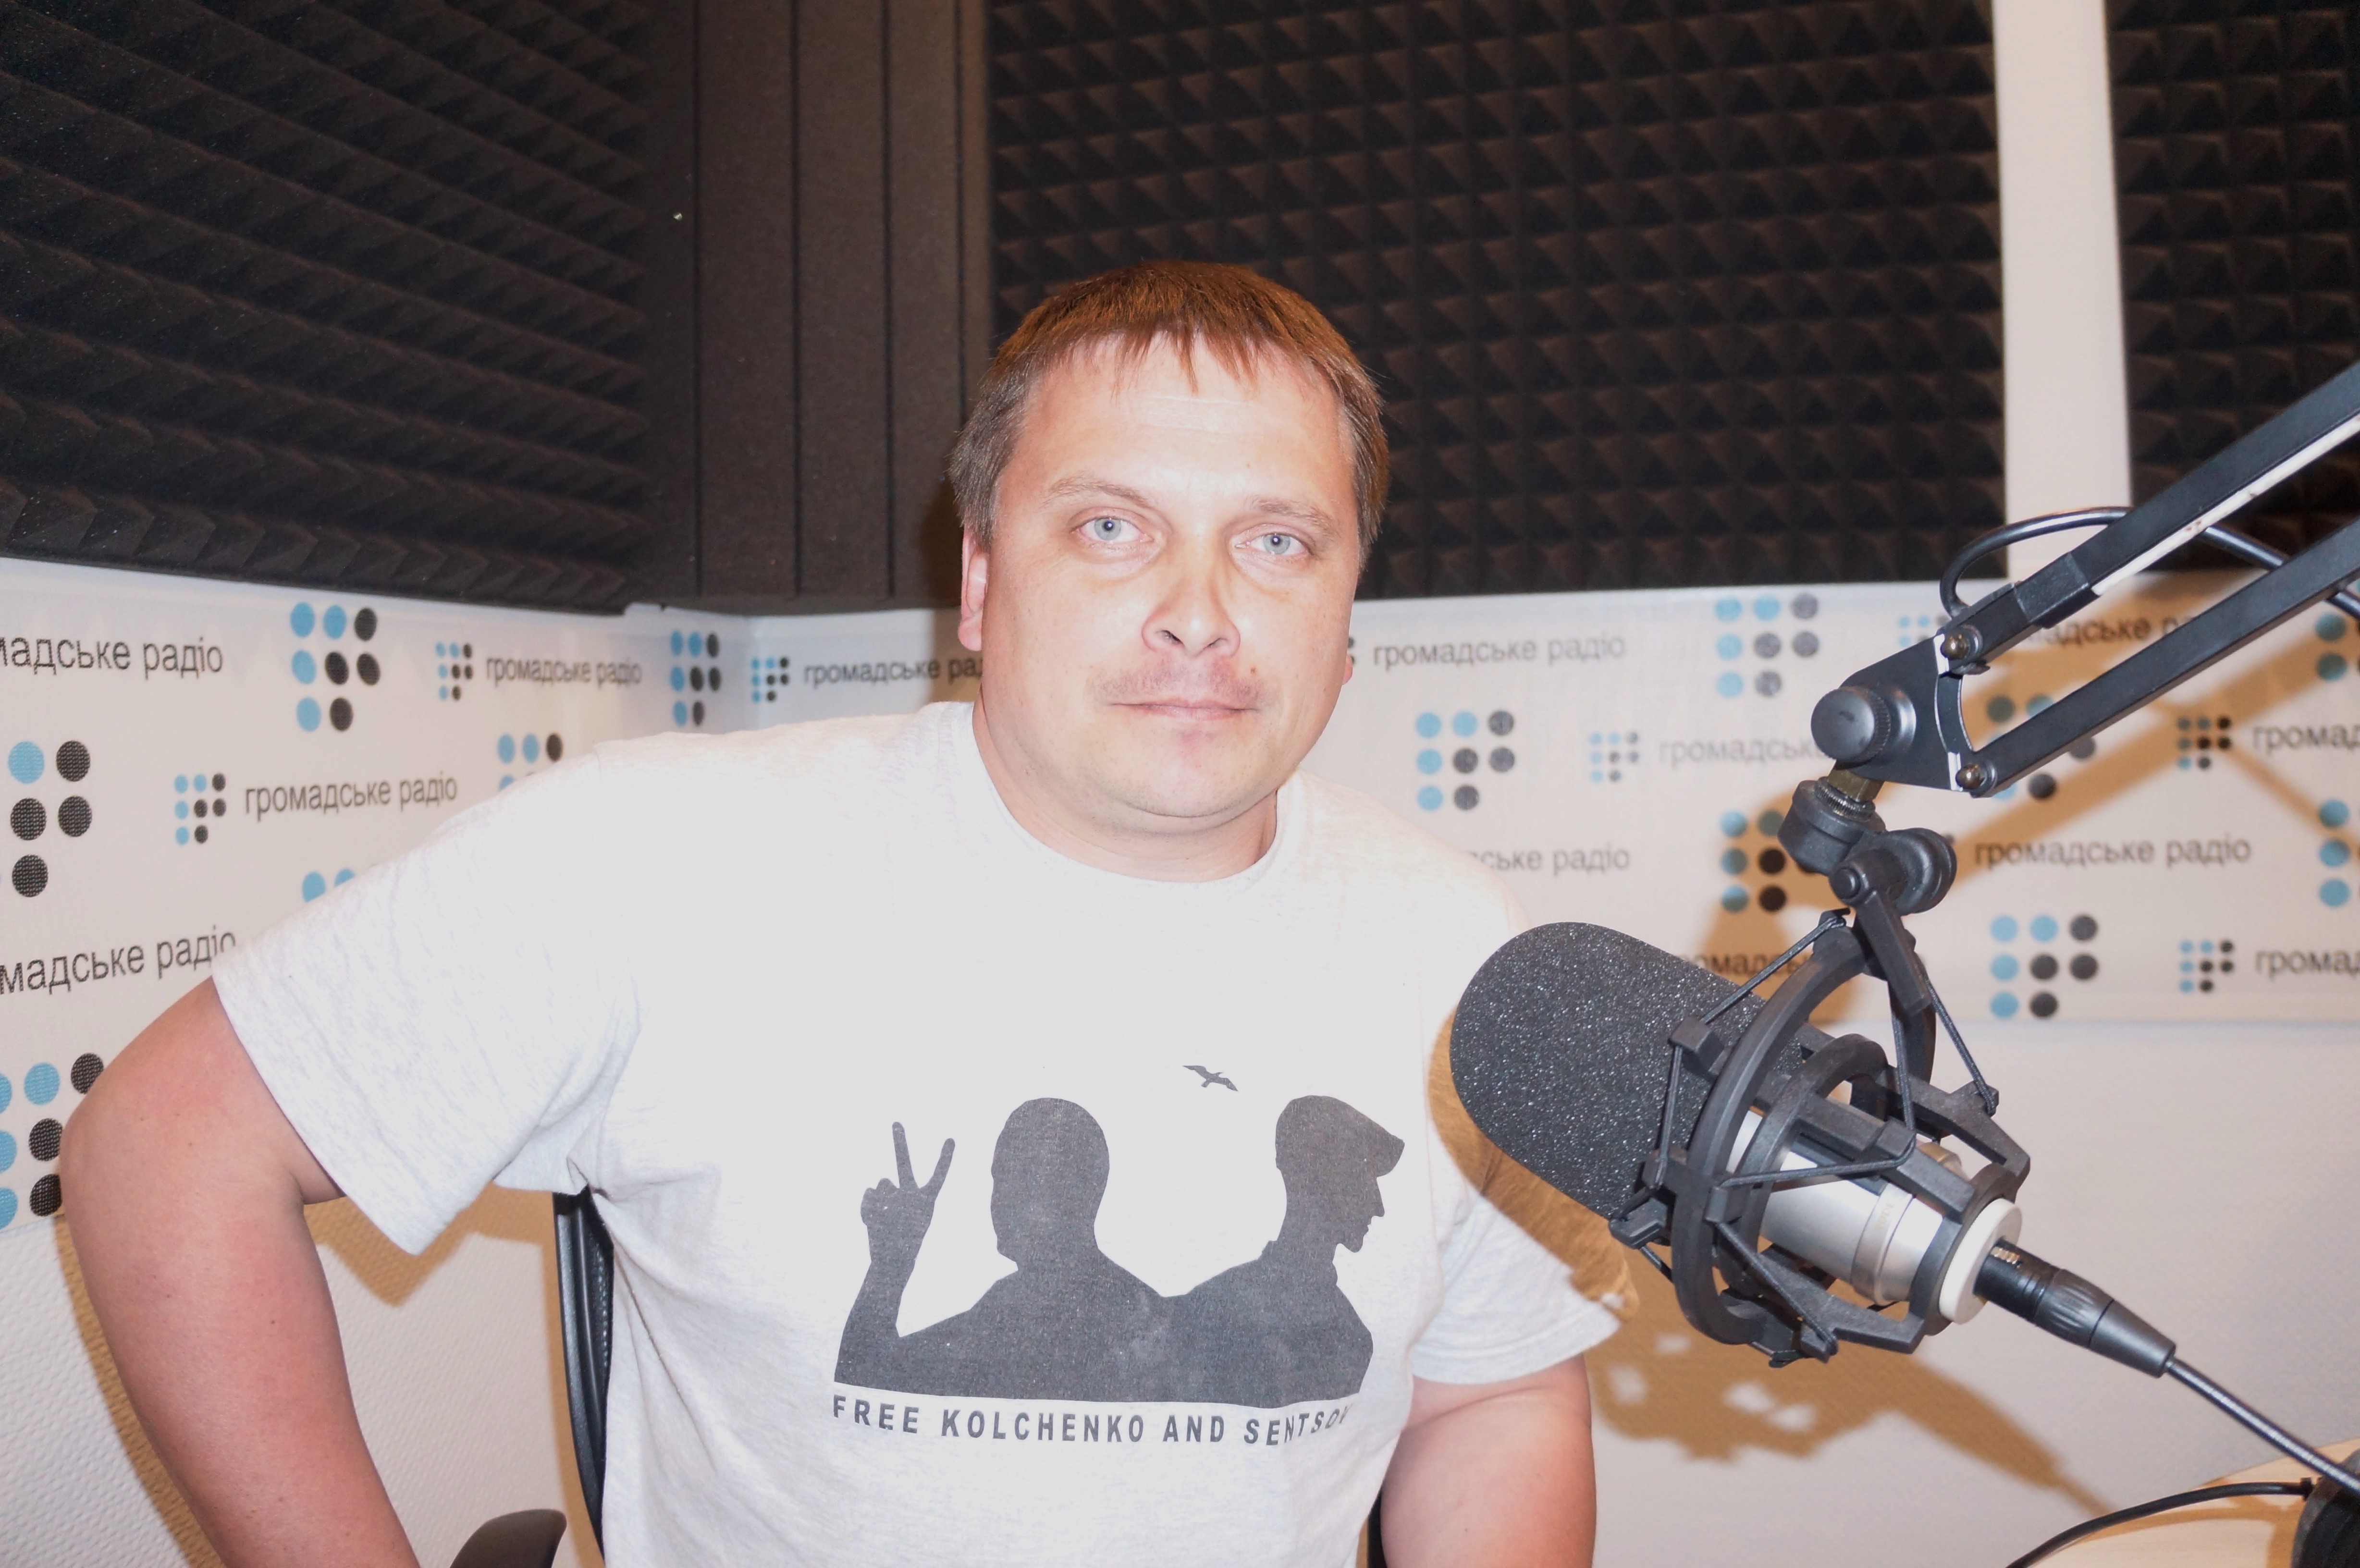 Мы не встретили людей, которые бы хотели присоединения эстонской Нарвы к России — журналист